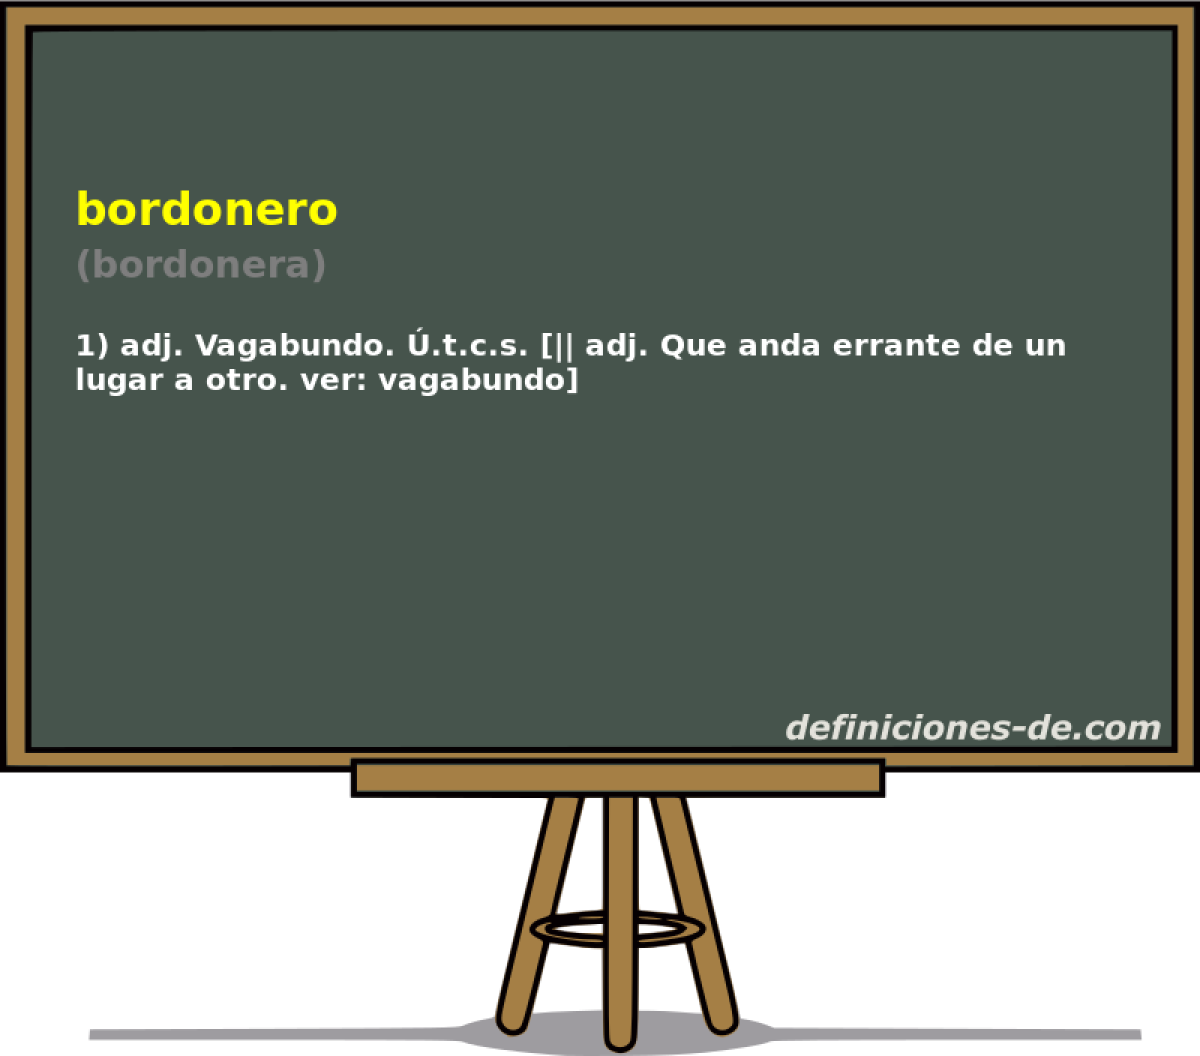 bordonero (bordonera)